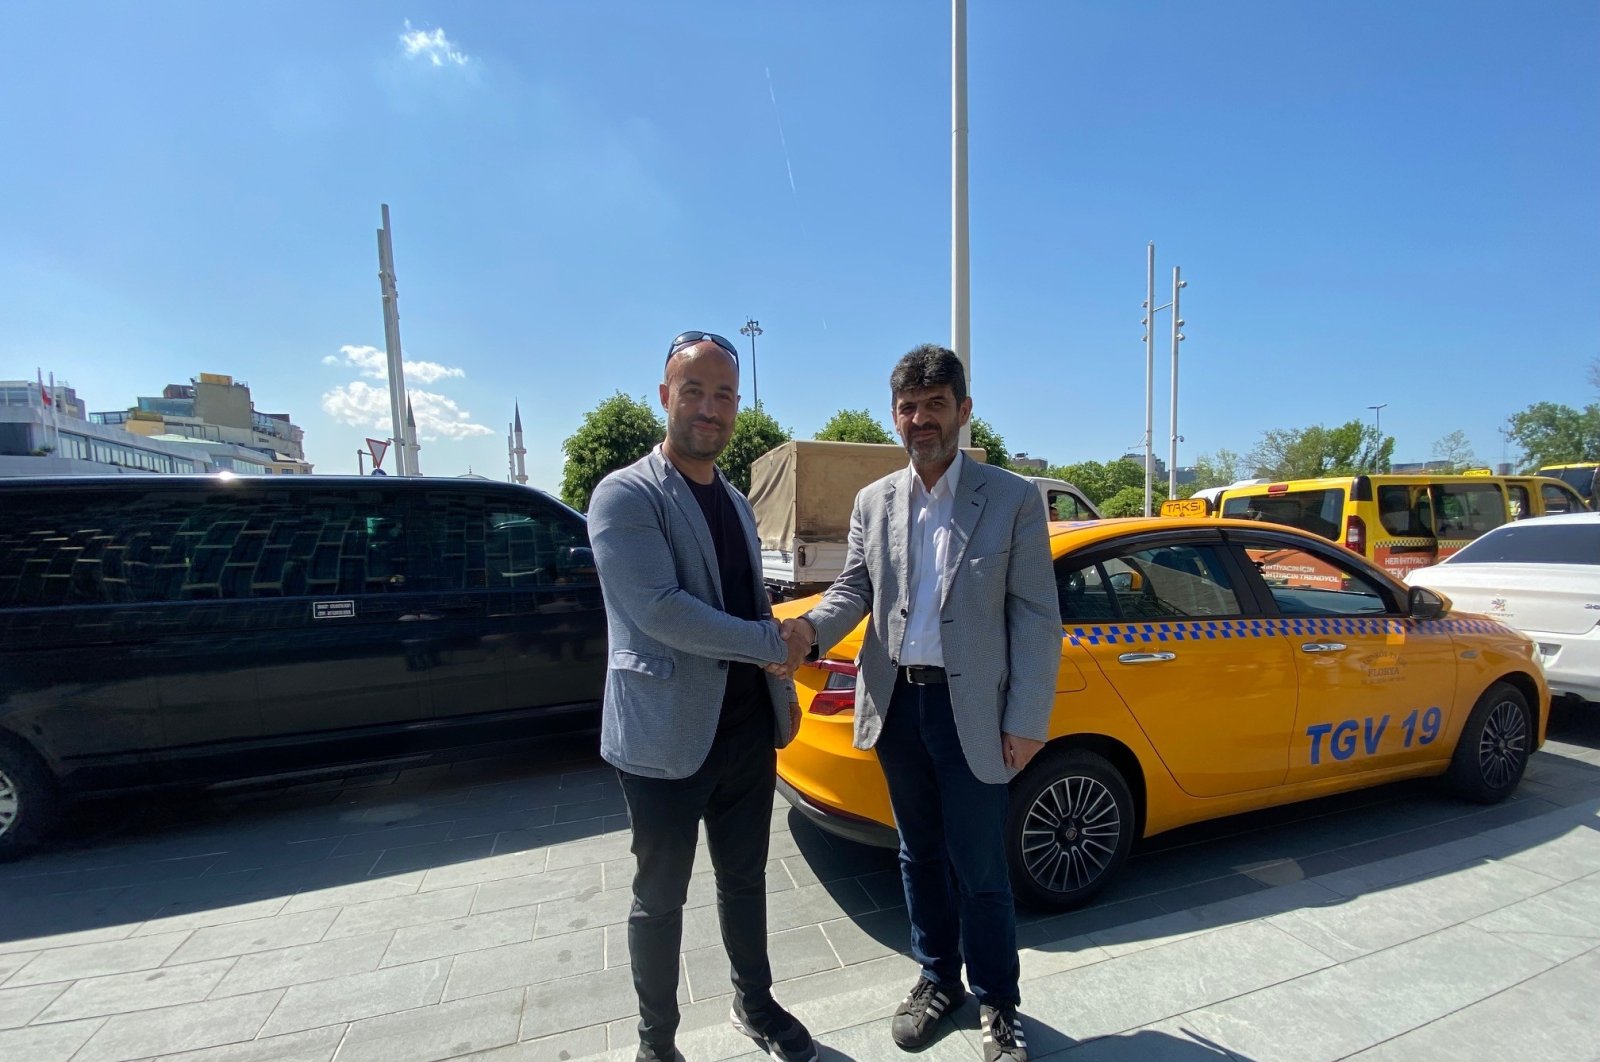 Sopir taksi Istanbul diberikan untuk menerima pelanggan